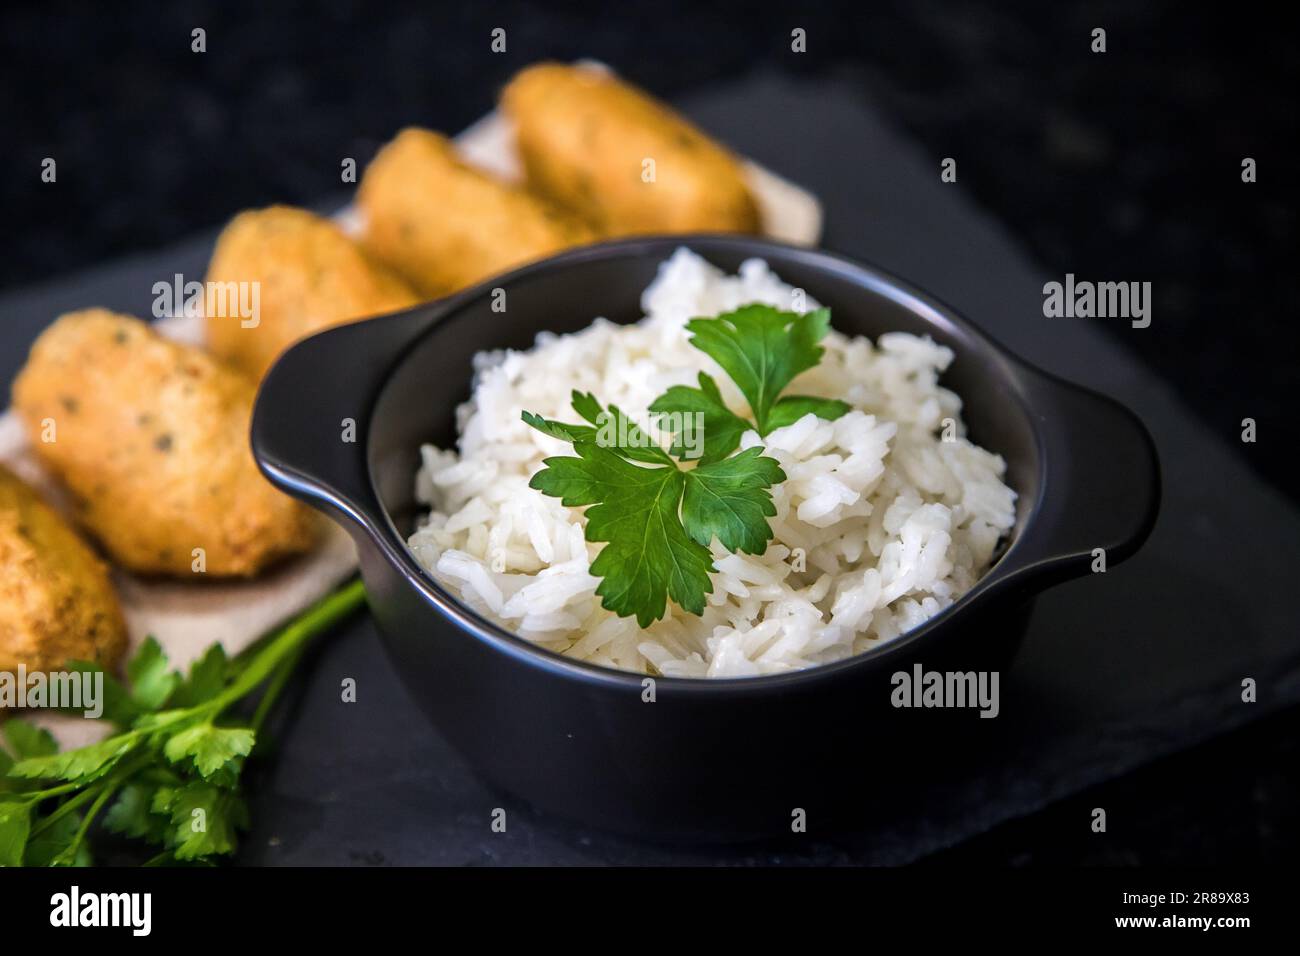 Bolinhos de bacalhau, sehr berühmt in der portugiesischen Gastronomie. Kabeljaukuchen serviert mit weißem Reis auf dunklem Hintergrund. Stockfoto